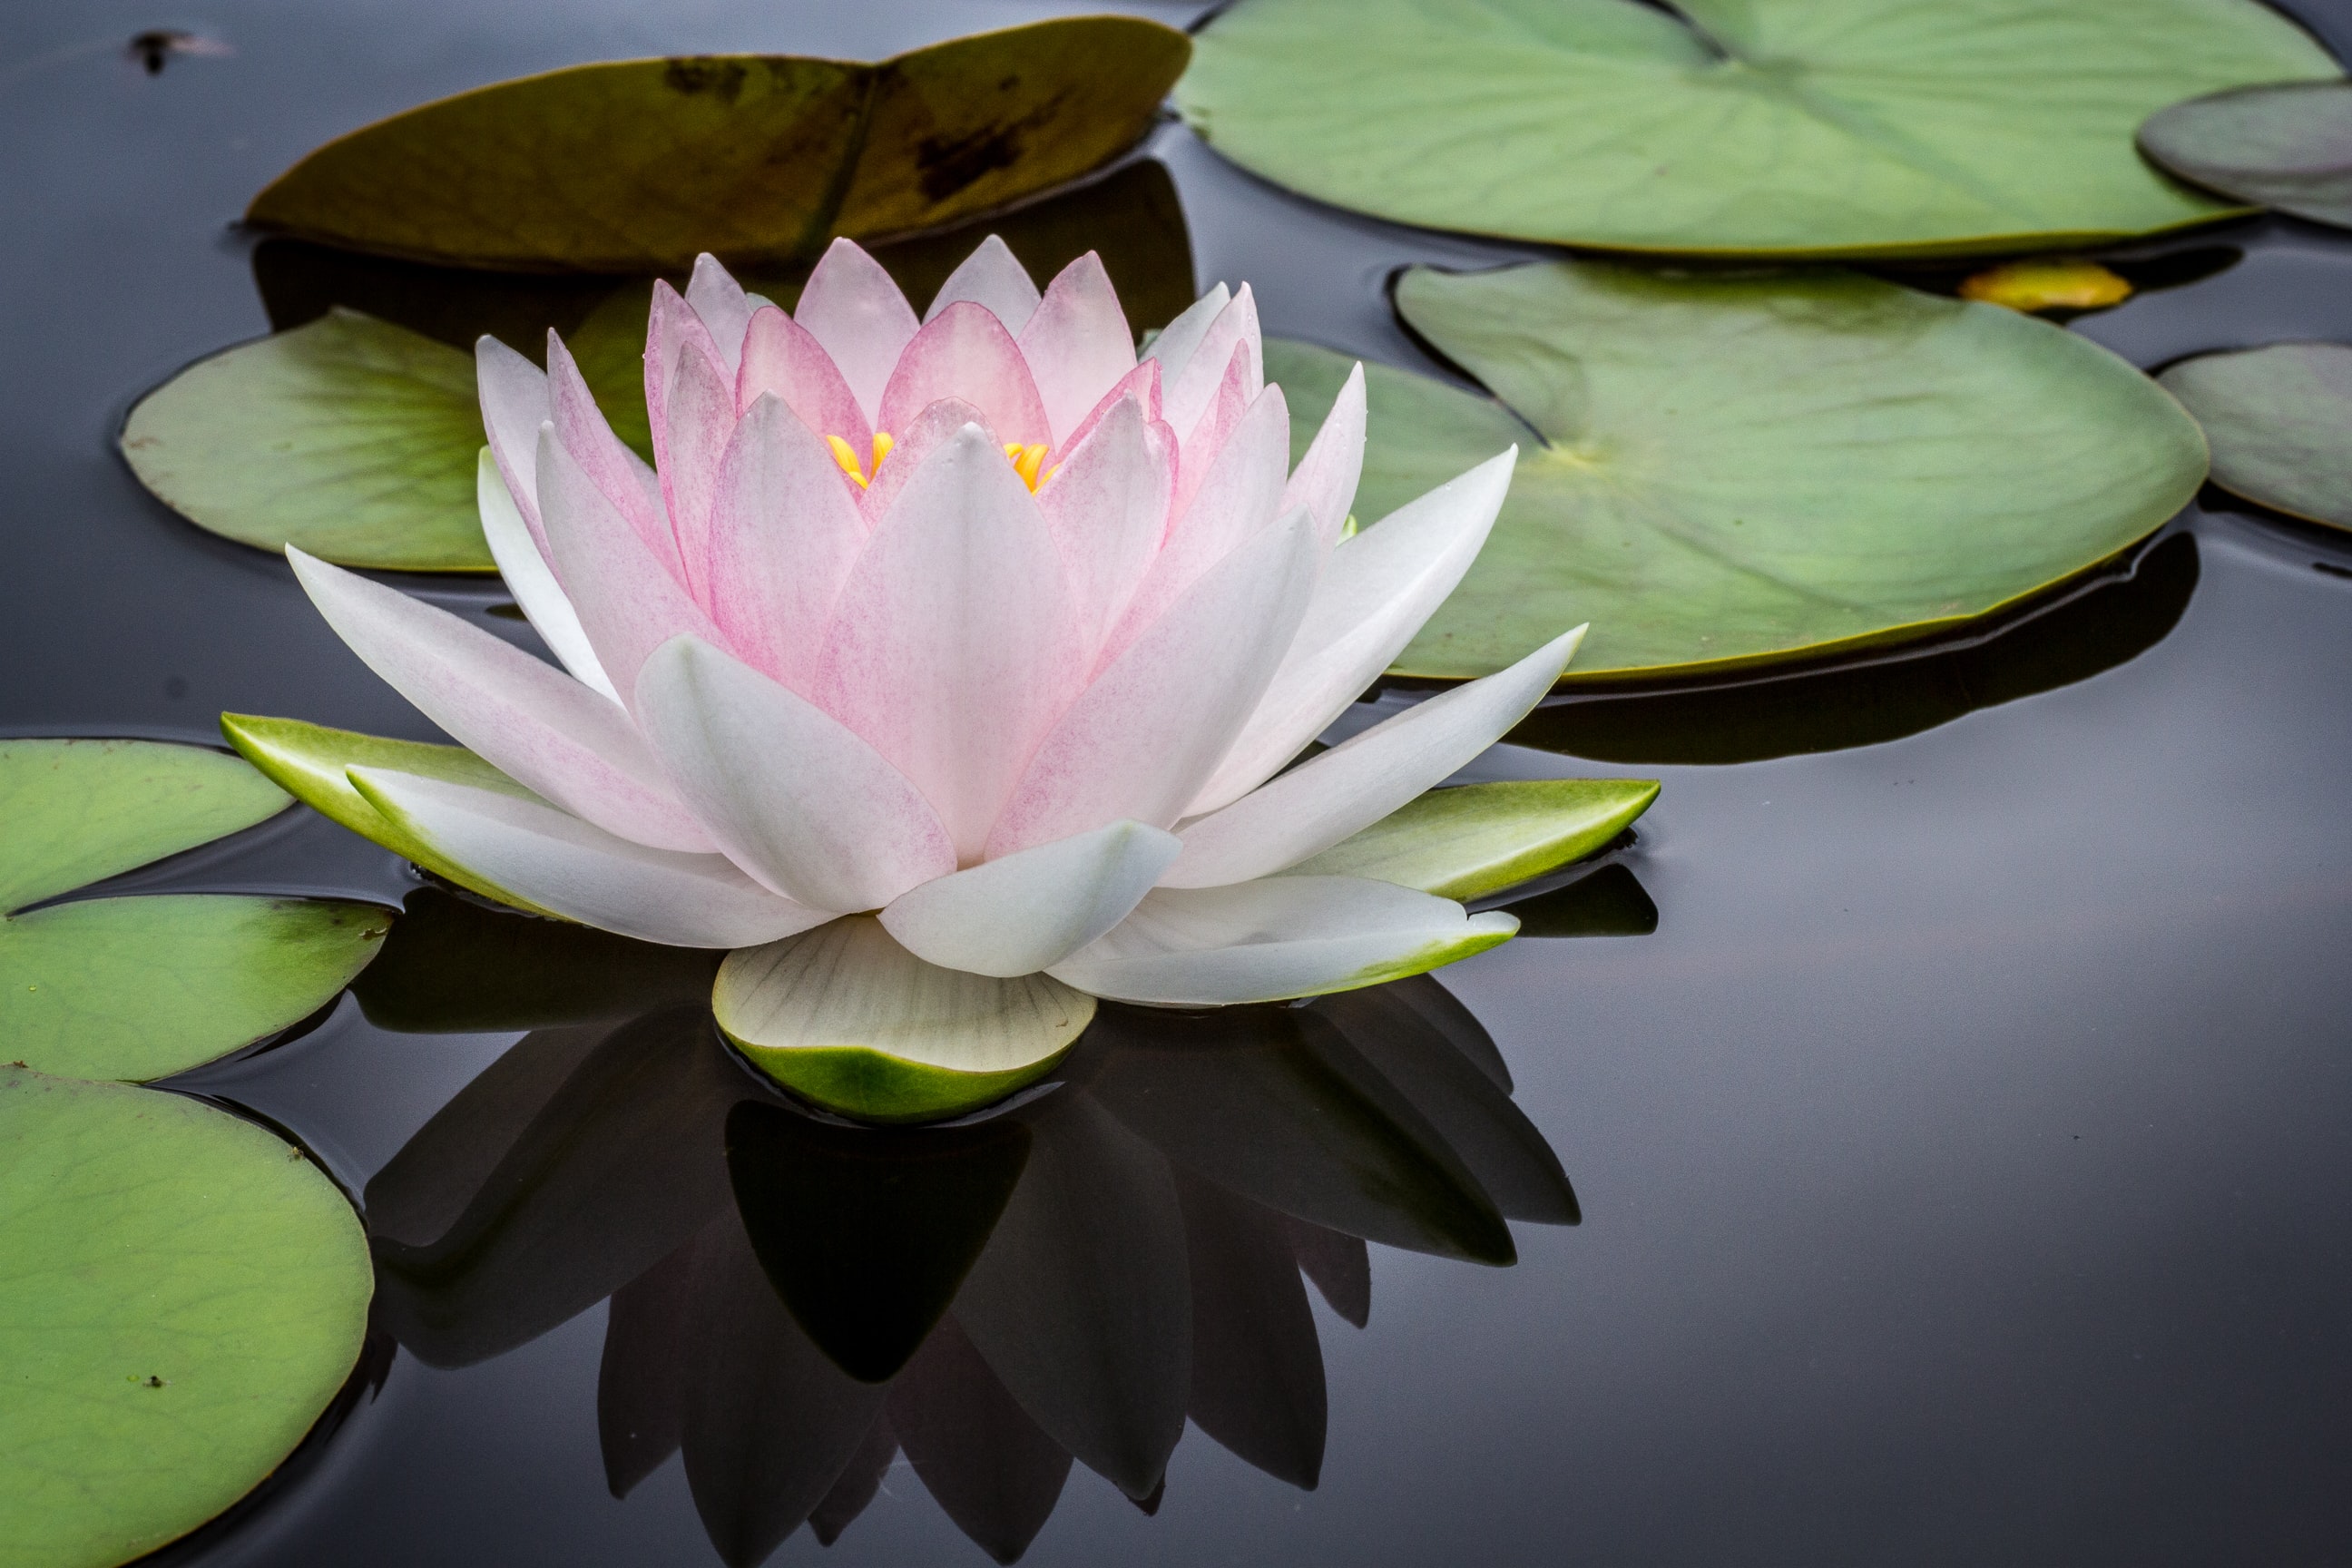 Pink lotus floated on dark pond.